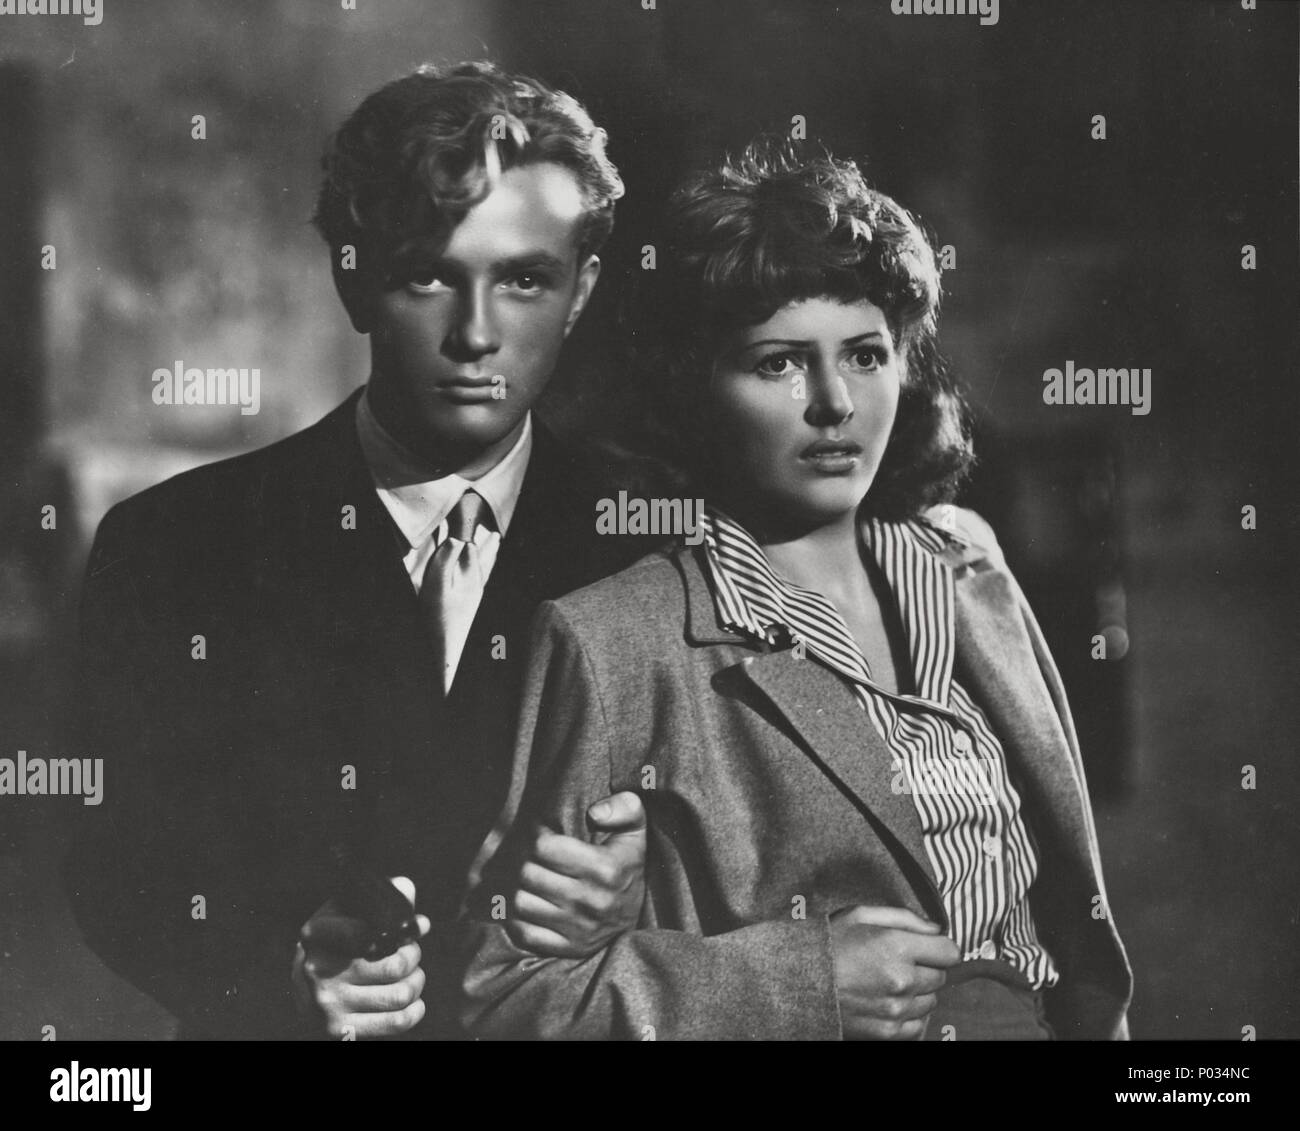 Original Film Title: GIOVENTU PERDUTA.  English Title: LOST YOUTH.  Film Director: PIETRO GERMI.  Year: 1947.  Stars: JACQUES SERNAS; CARLA DEL POGGIO. Stock Photo